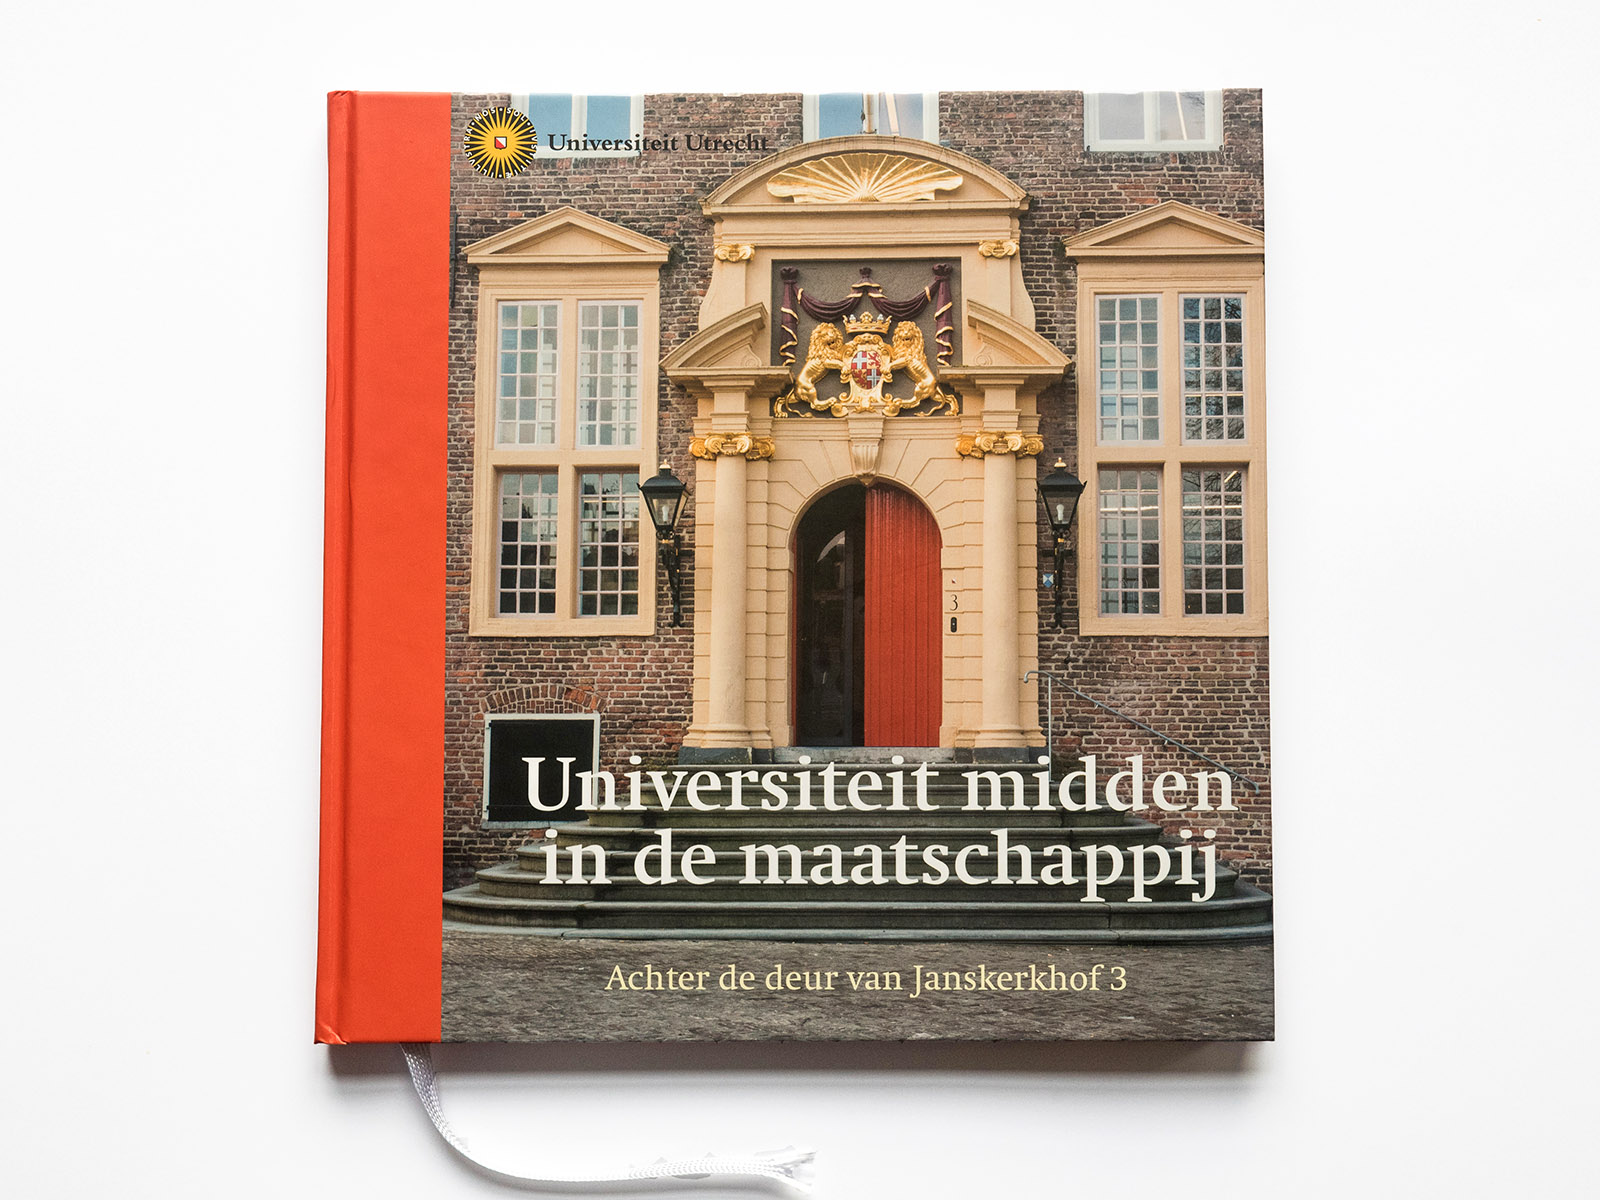 Boek voor Universiteit Utrecht